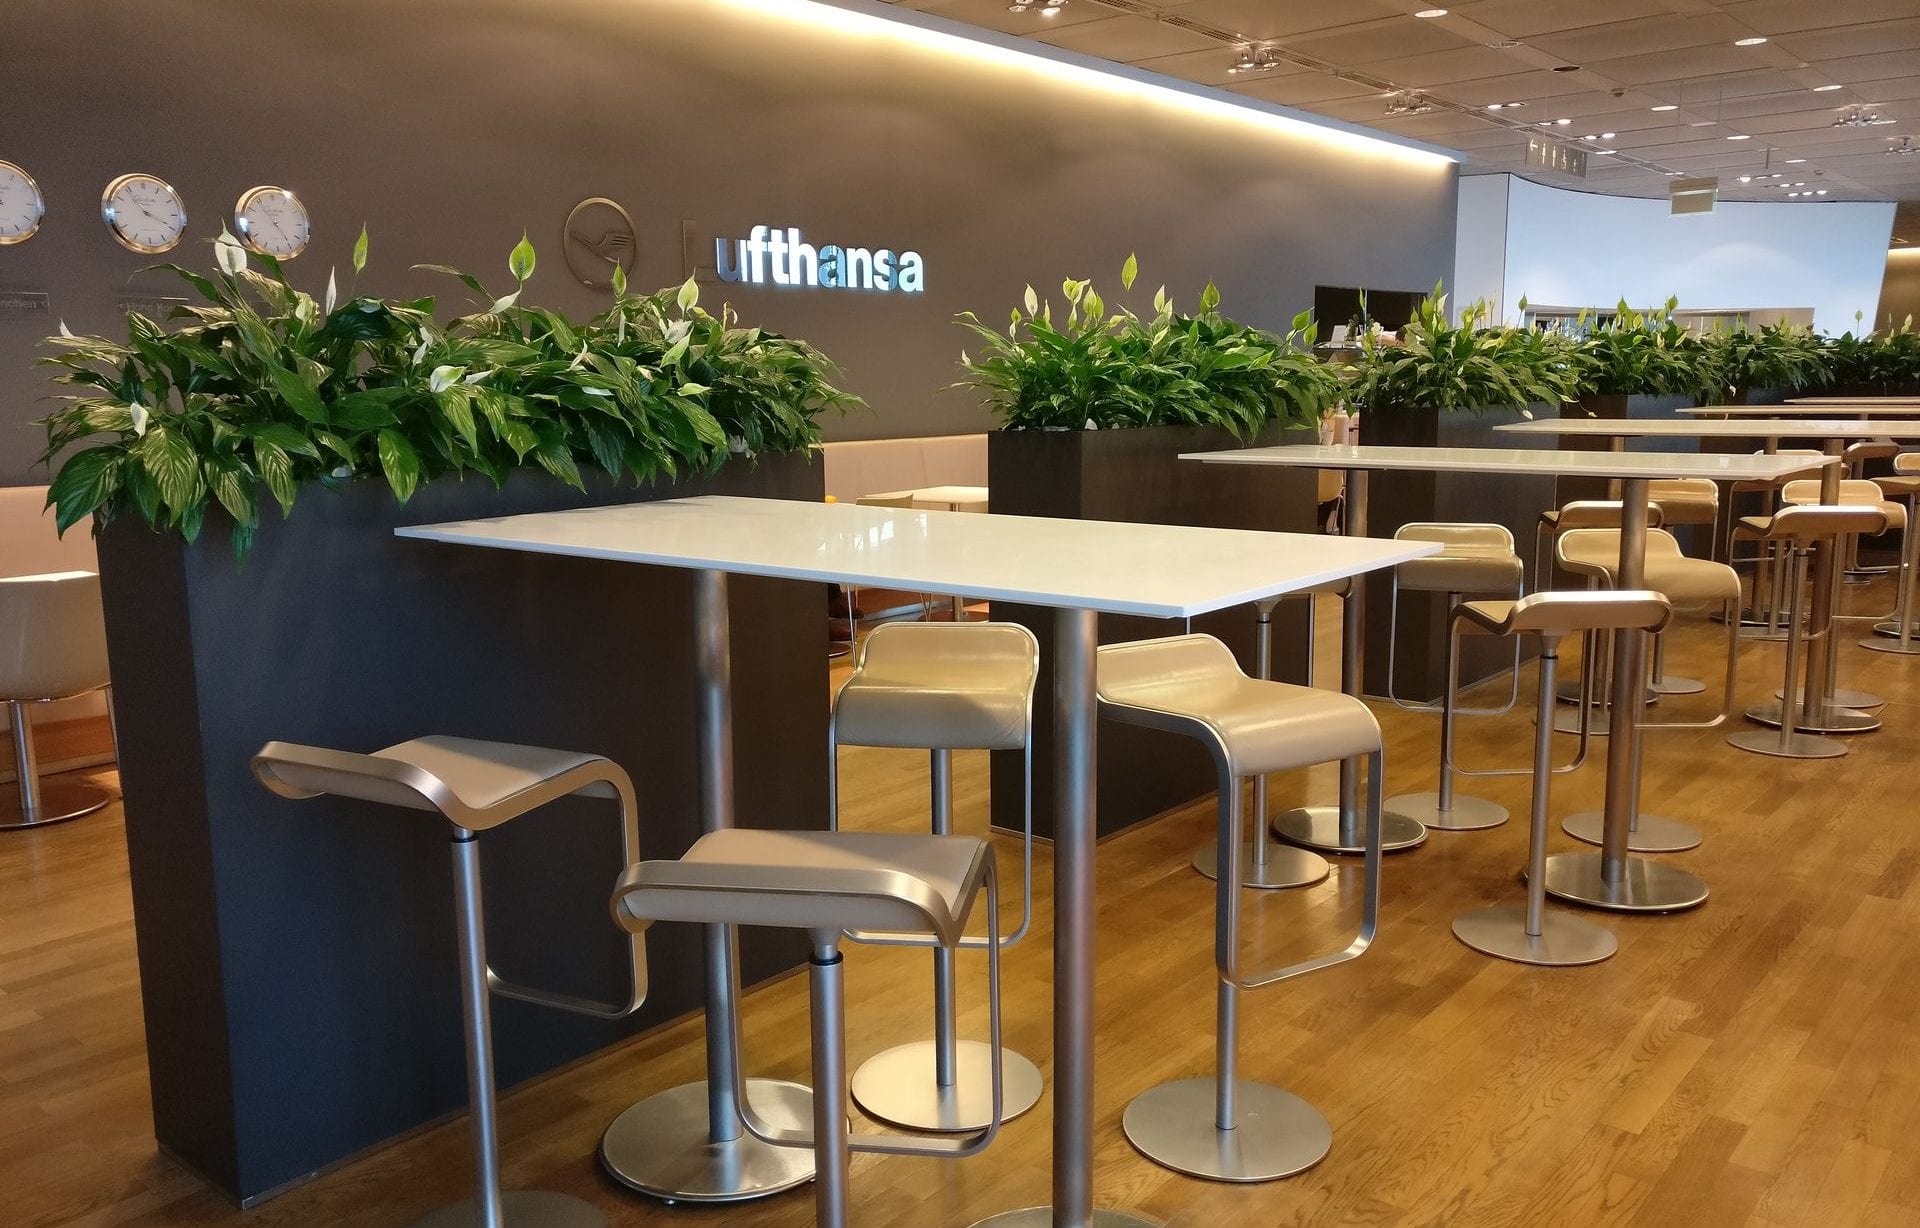 Lufthansa Business Lounge Non Schengen Munich Seating 7